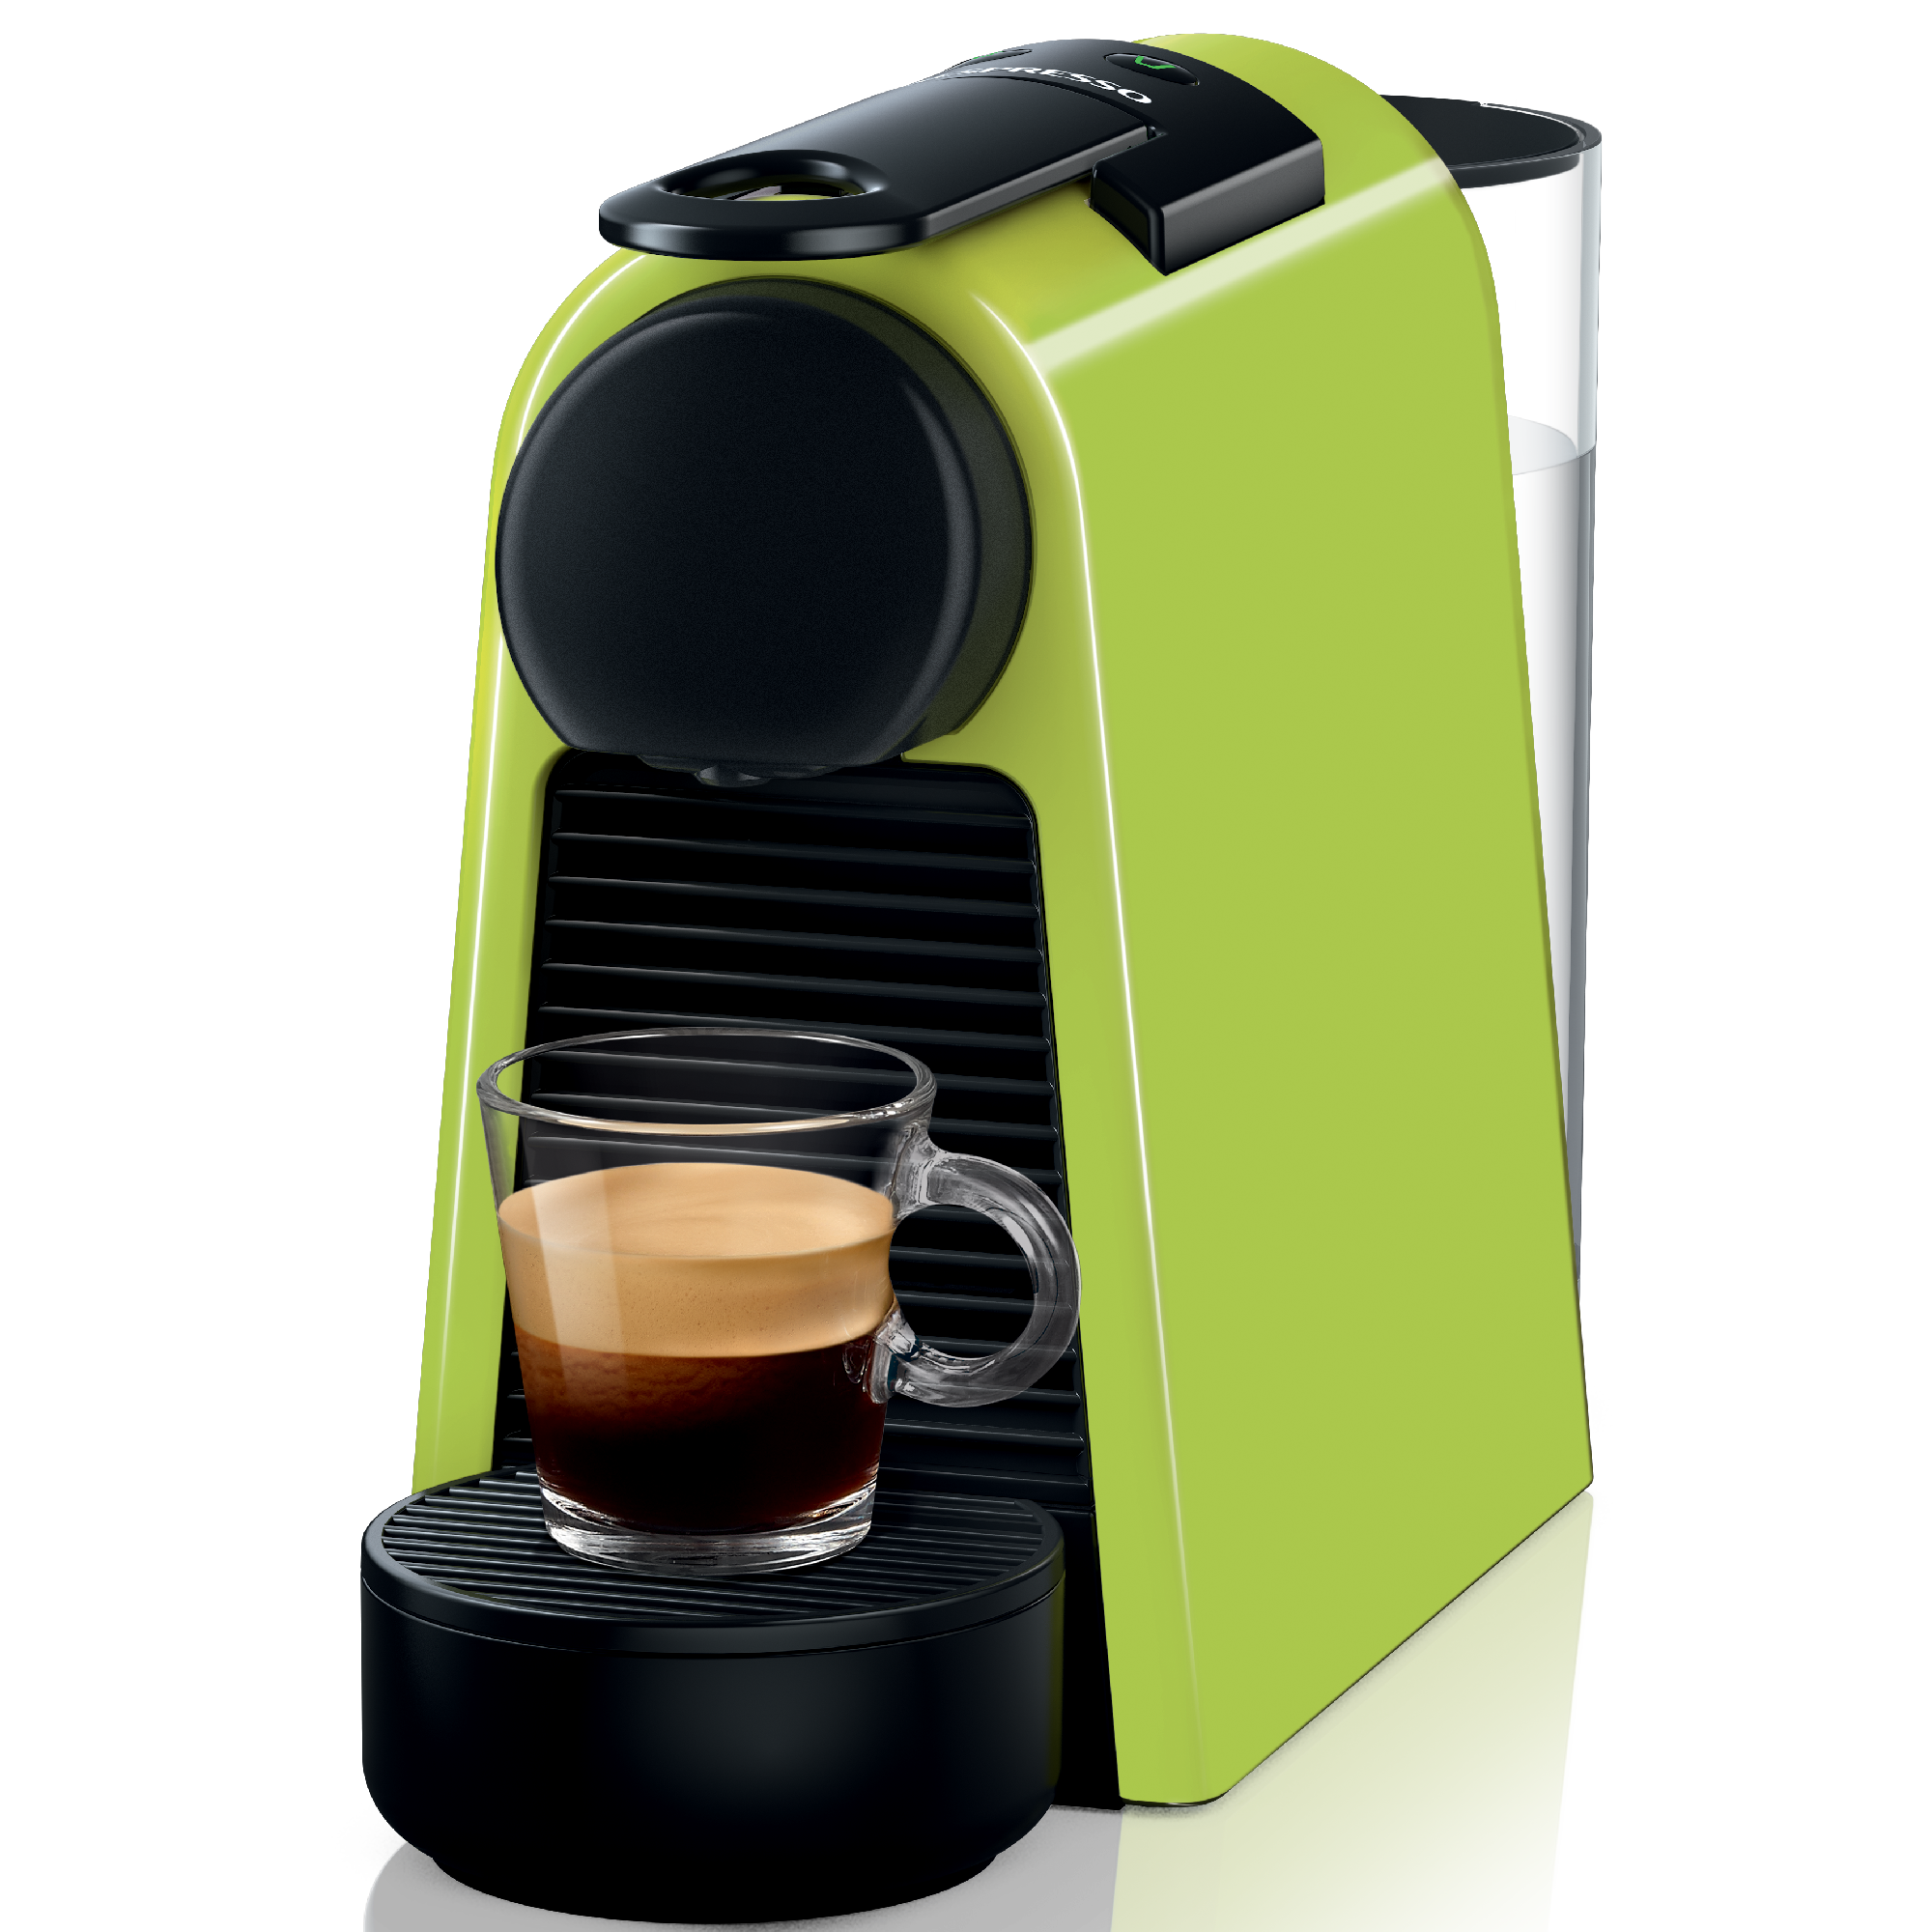 EU Macchina a capsule Nespresso mini macchina da caffè a capsule compatta per caffè espresso e caffè crema macchina da caffè da 1420 W macchina da caffè a capsule con serbatoio dellacqua da 48 once 